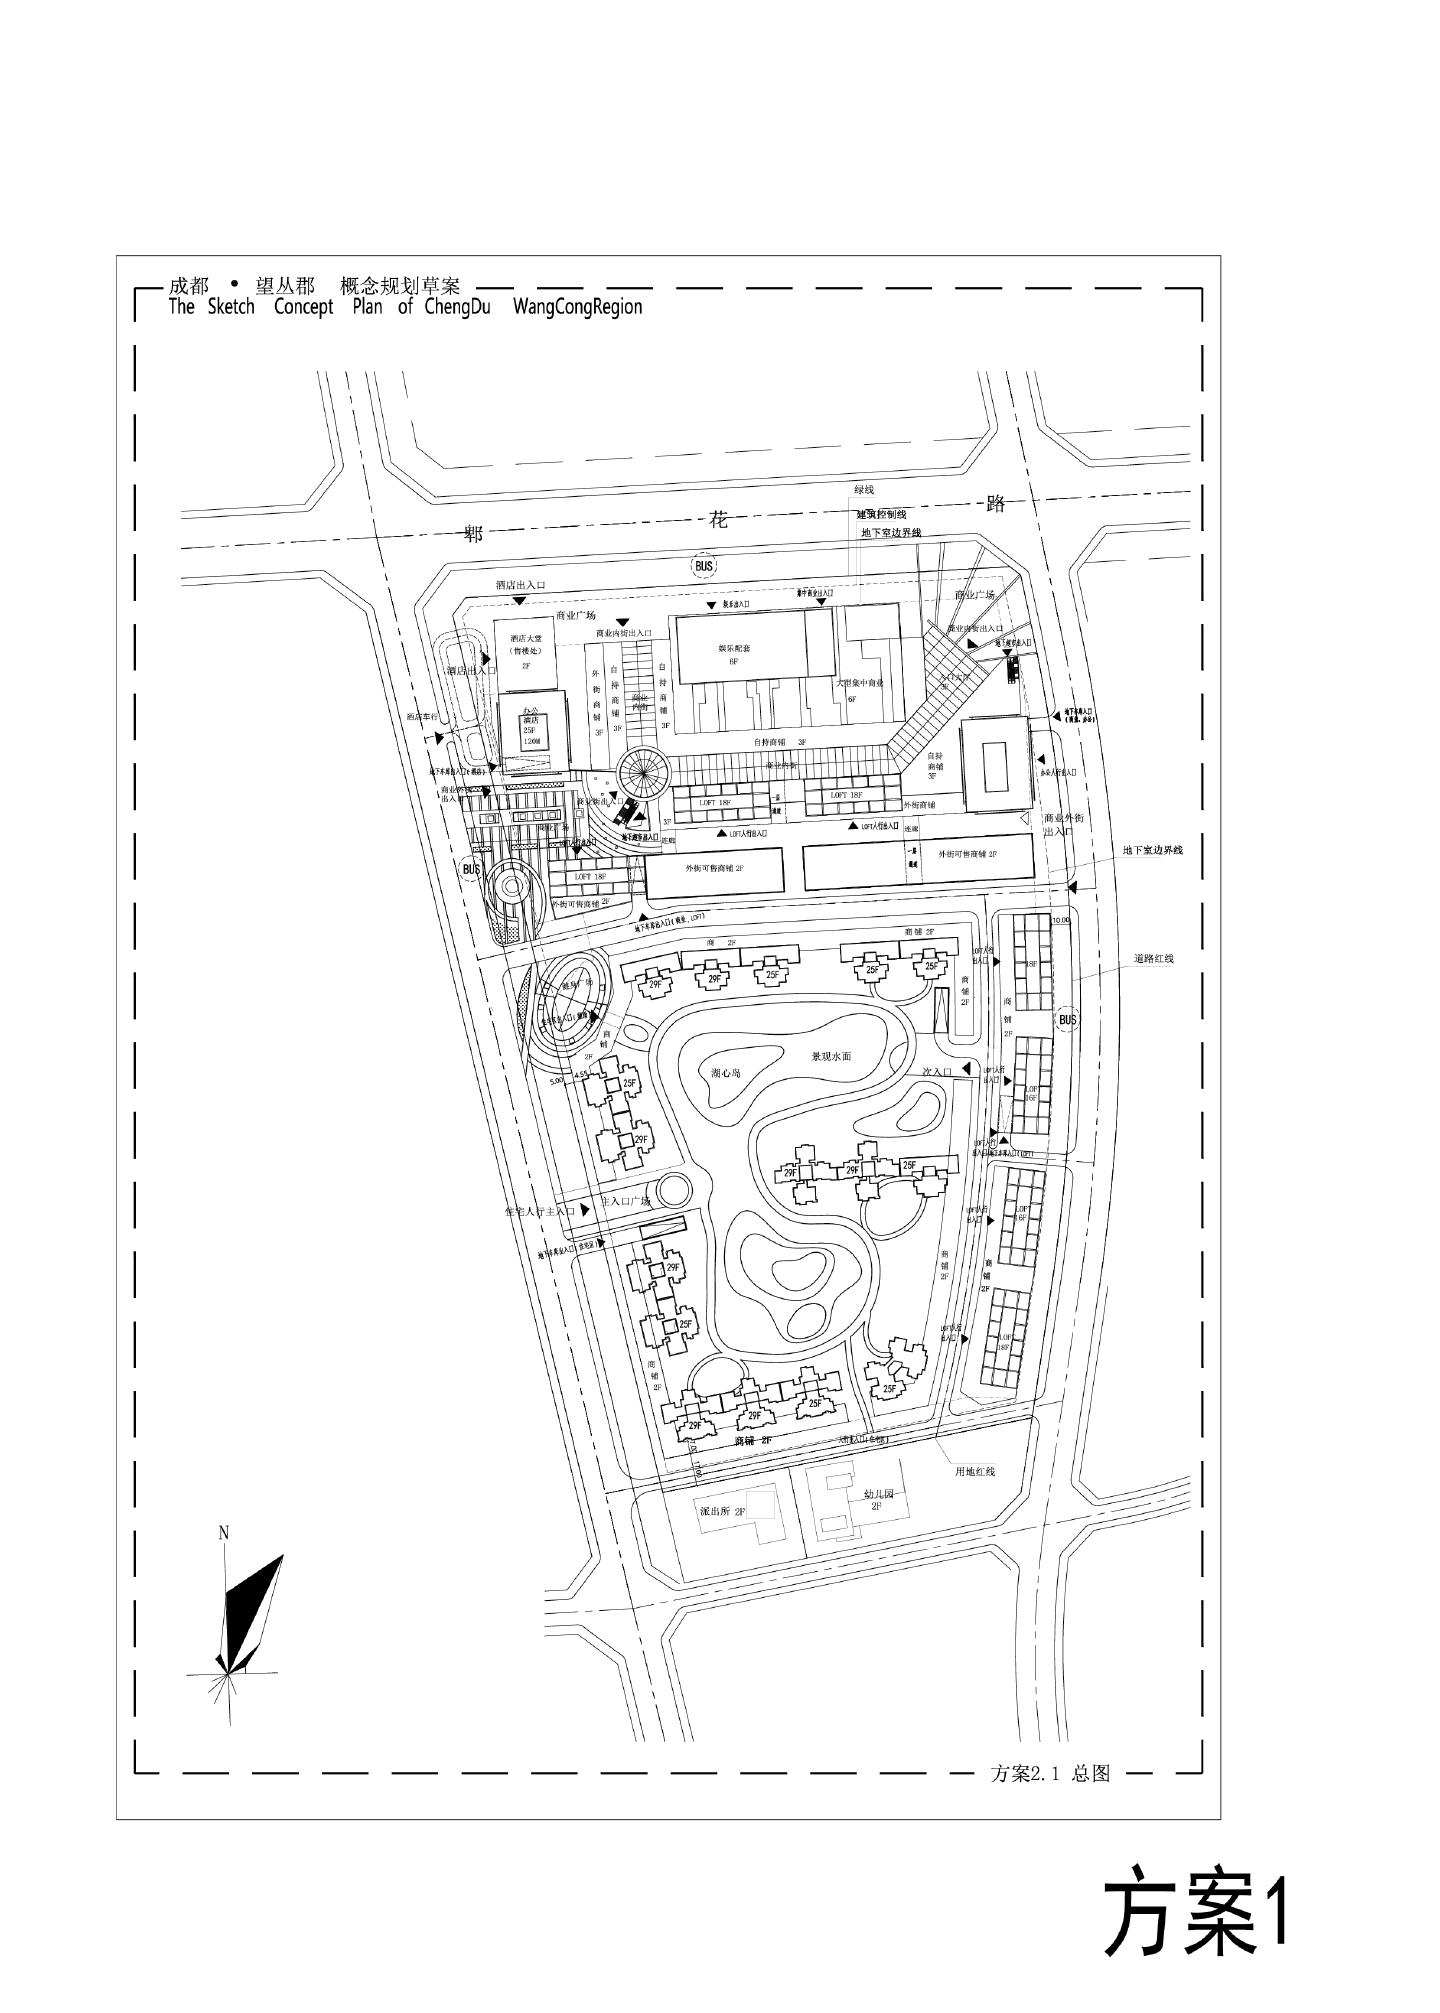 成都·望丛郡概念规划草案1011 花样年方案CAD图.dwg